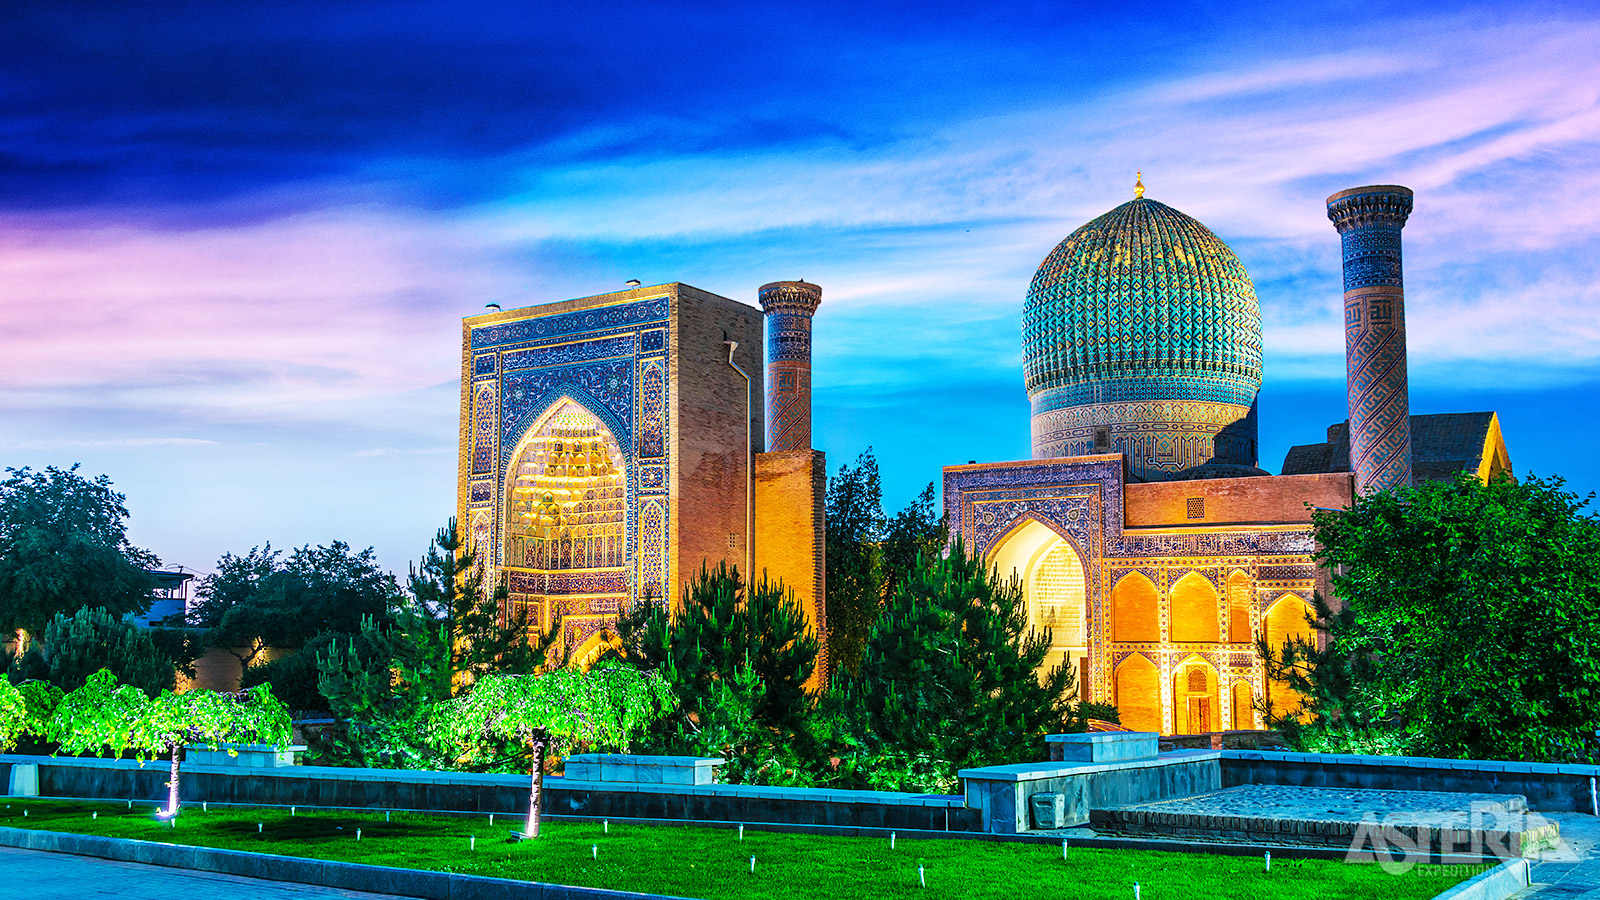 Het mausoleum van Gur Emir in Samarkand met zijn prachtige turqoiseblauw geribbelde koepel